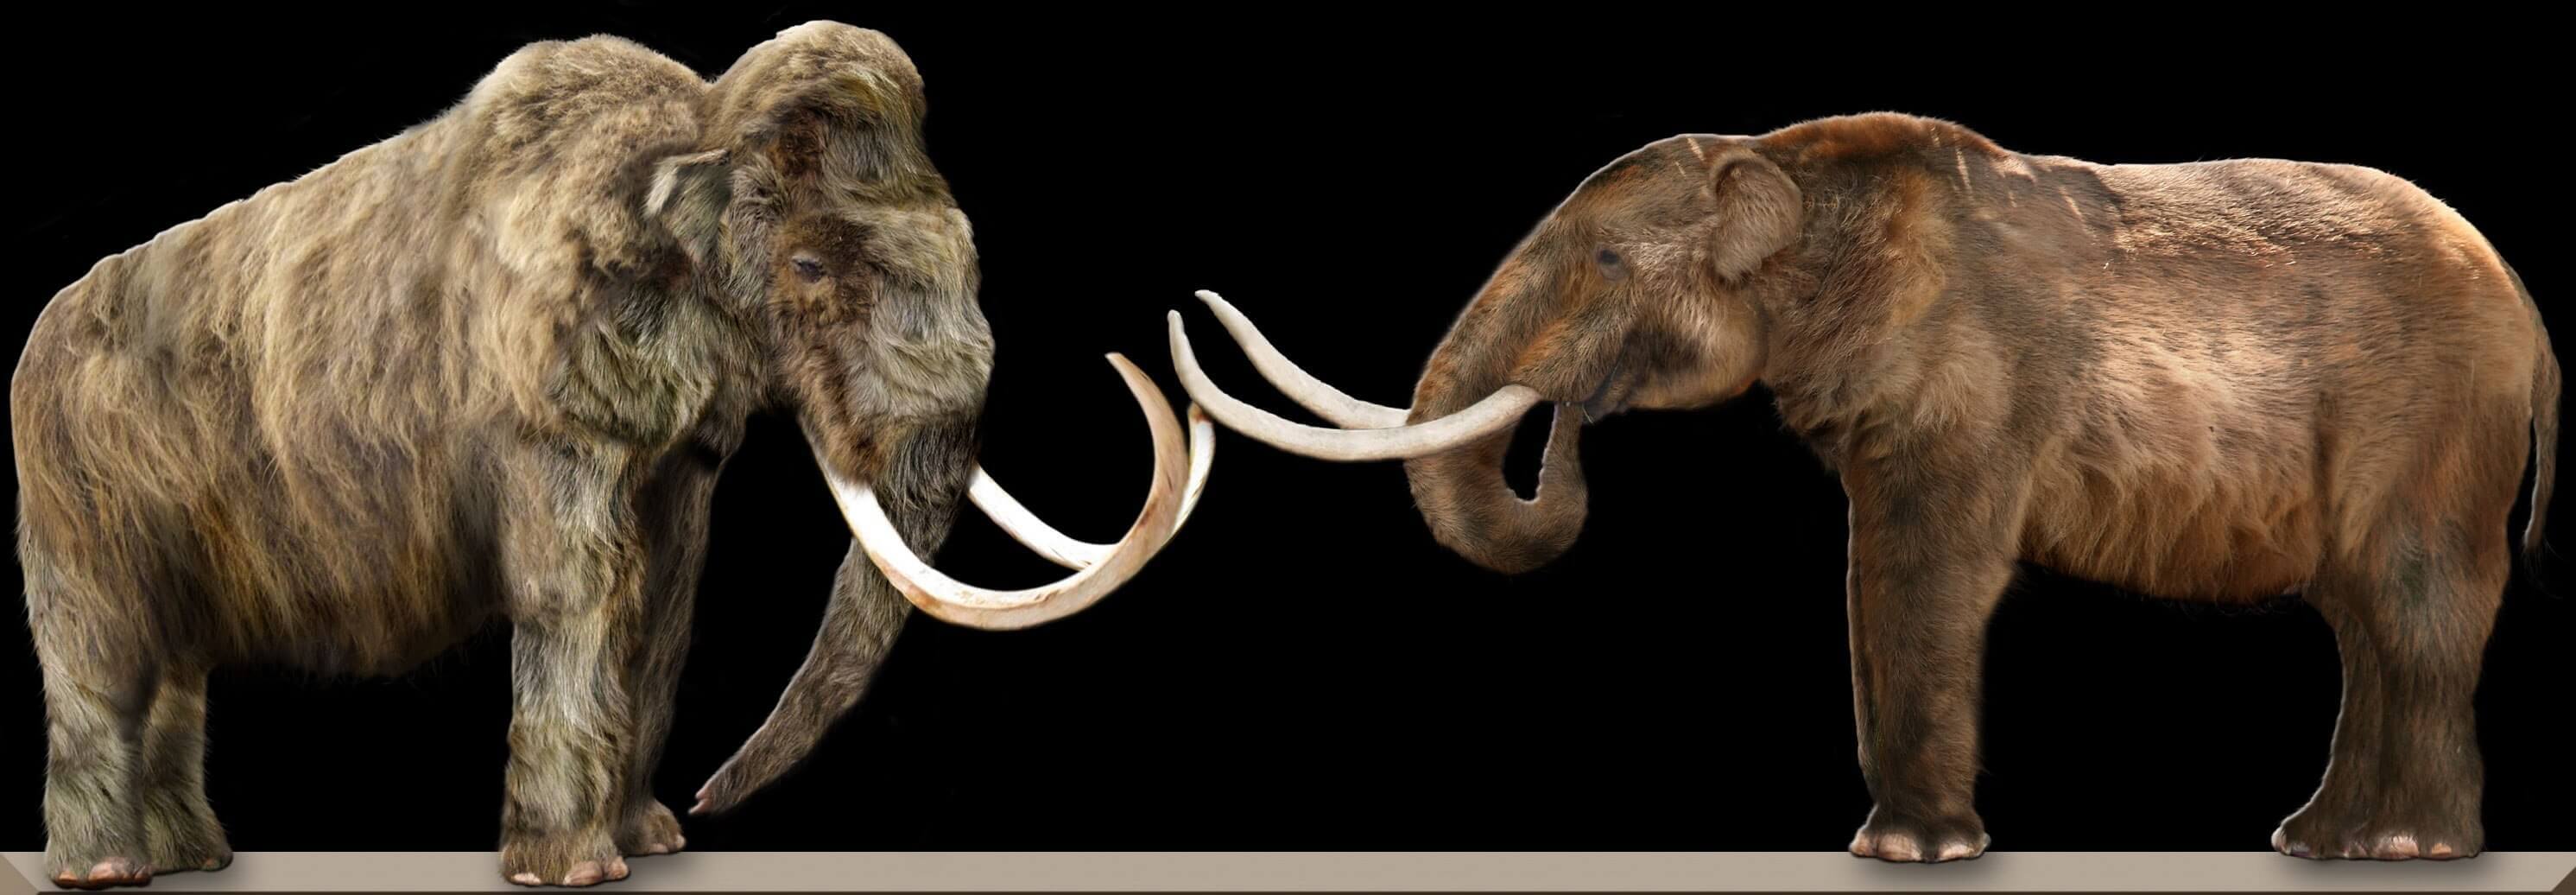 il mastodonte estinto presentava caratteristiche differenti da quelle del mammut